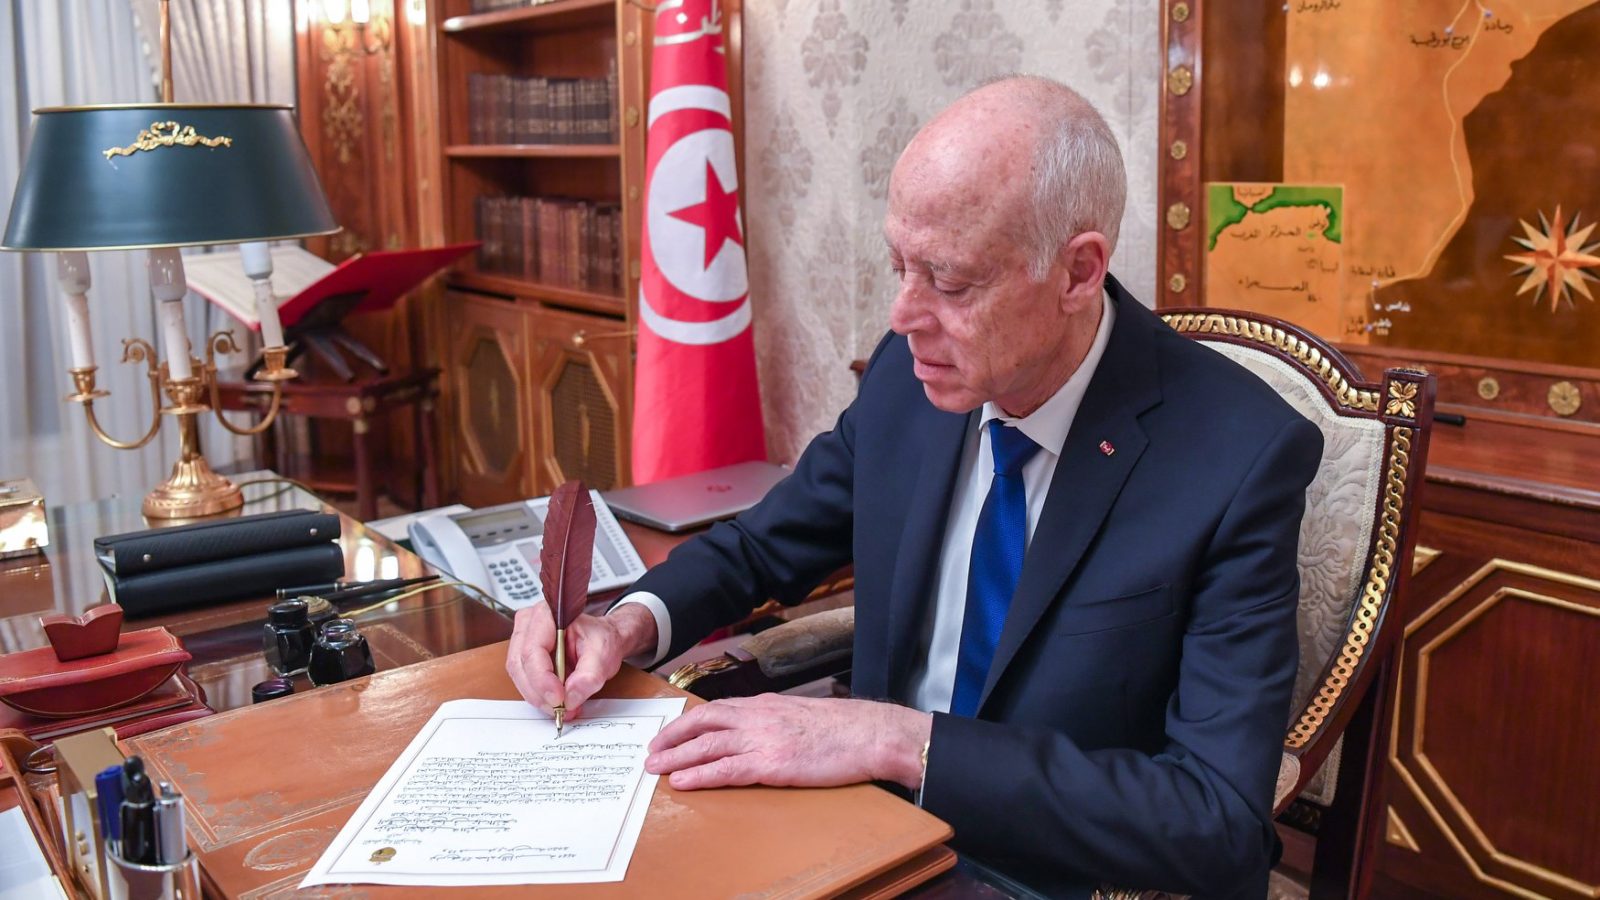 مكالمة هاتفية بين قيس سعيّد والرئيس الإيطالي حول المبادرة التونسية الأممية حول الوباء